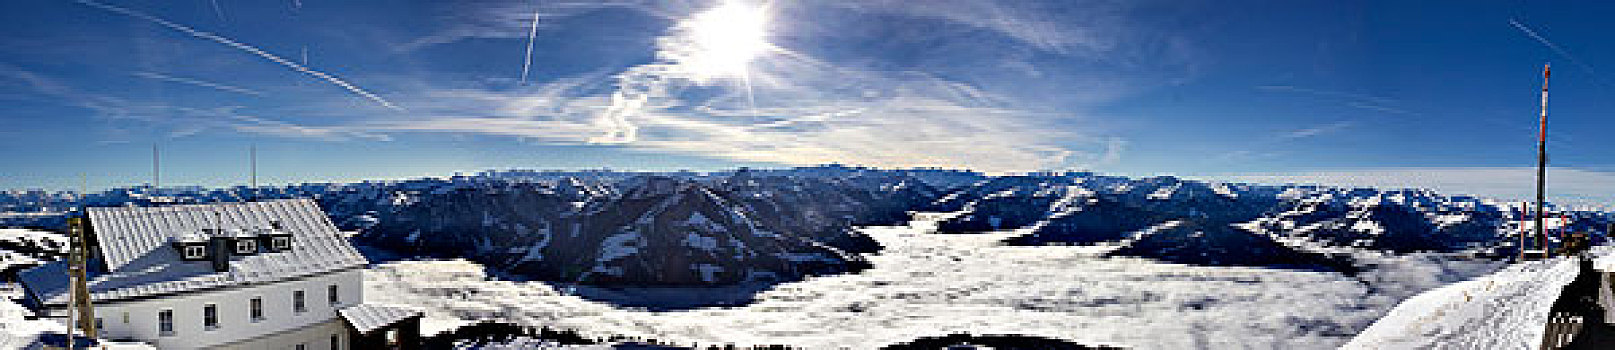 阿尔卑斯山,冬天,高,雾,遮盖,山谷,风景,胜地,提洛尔,奥地利,欧洲